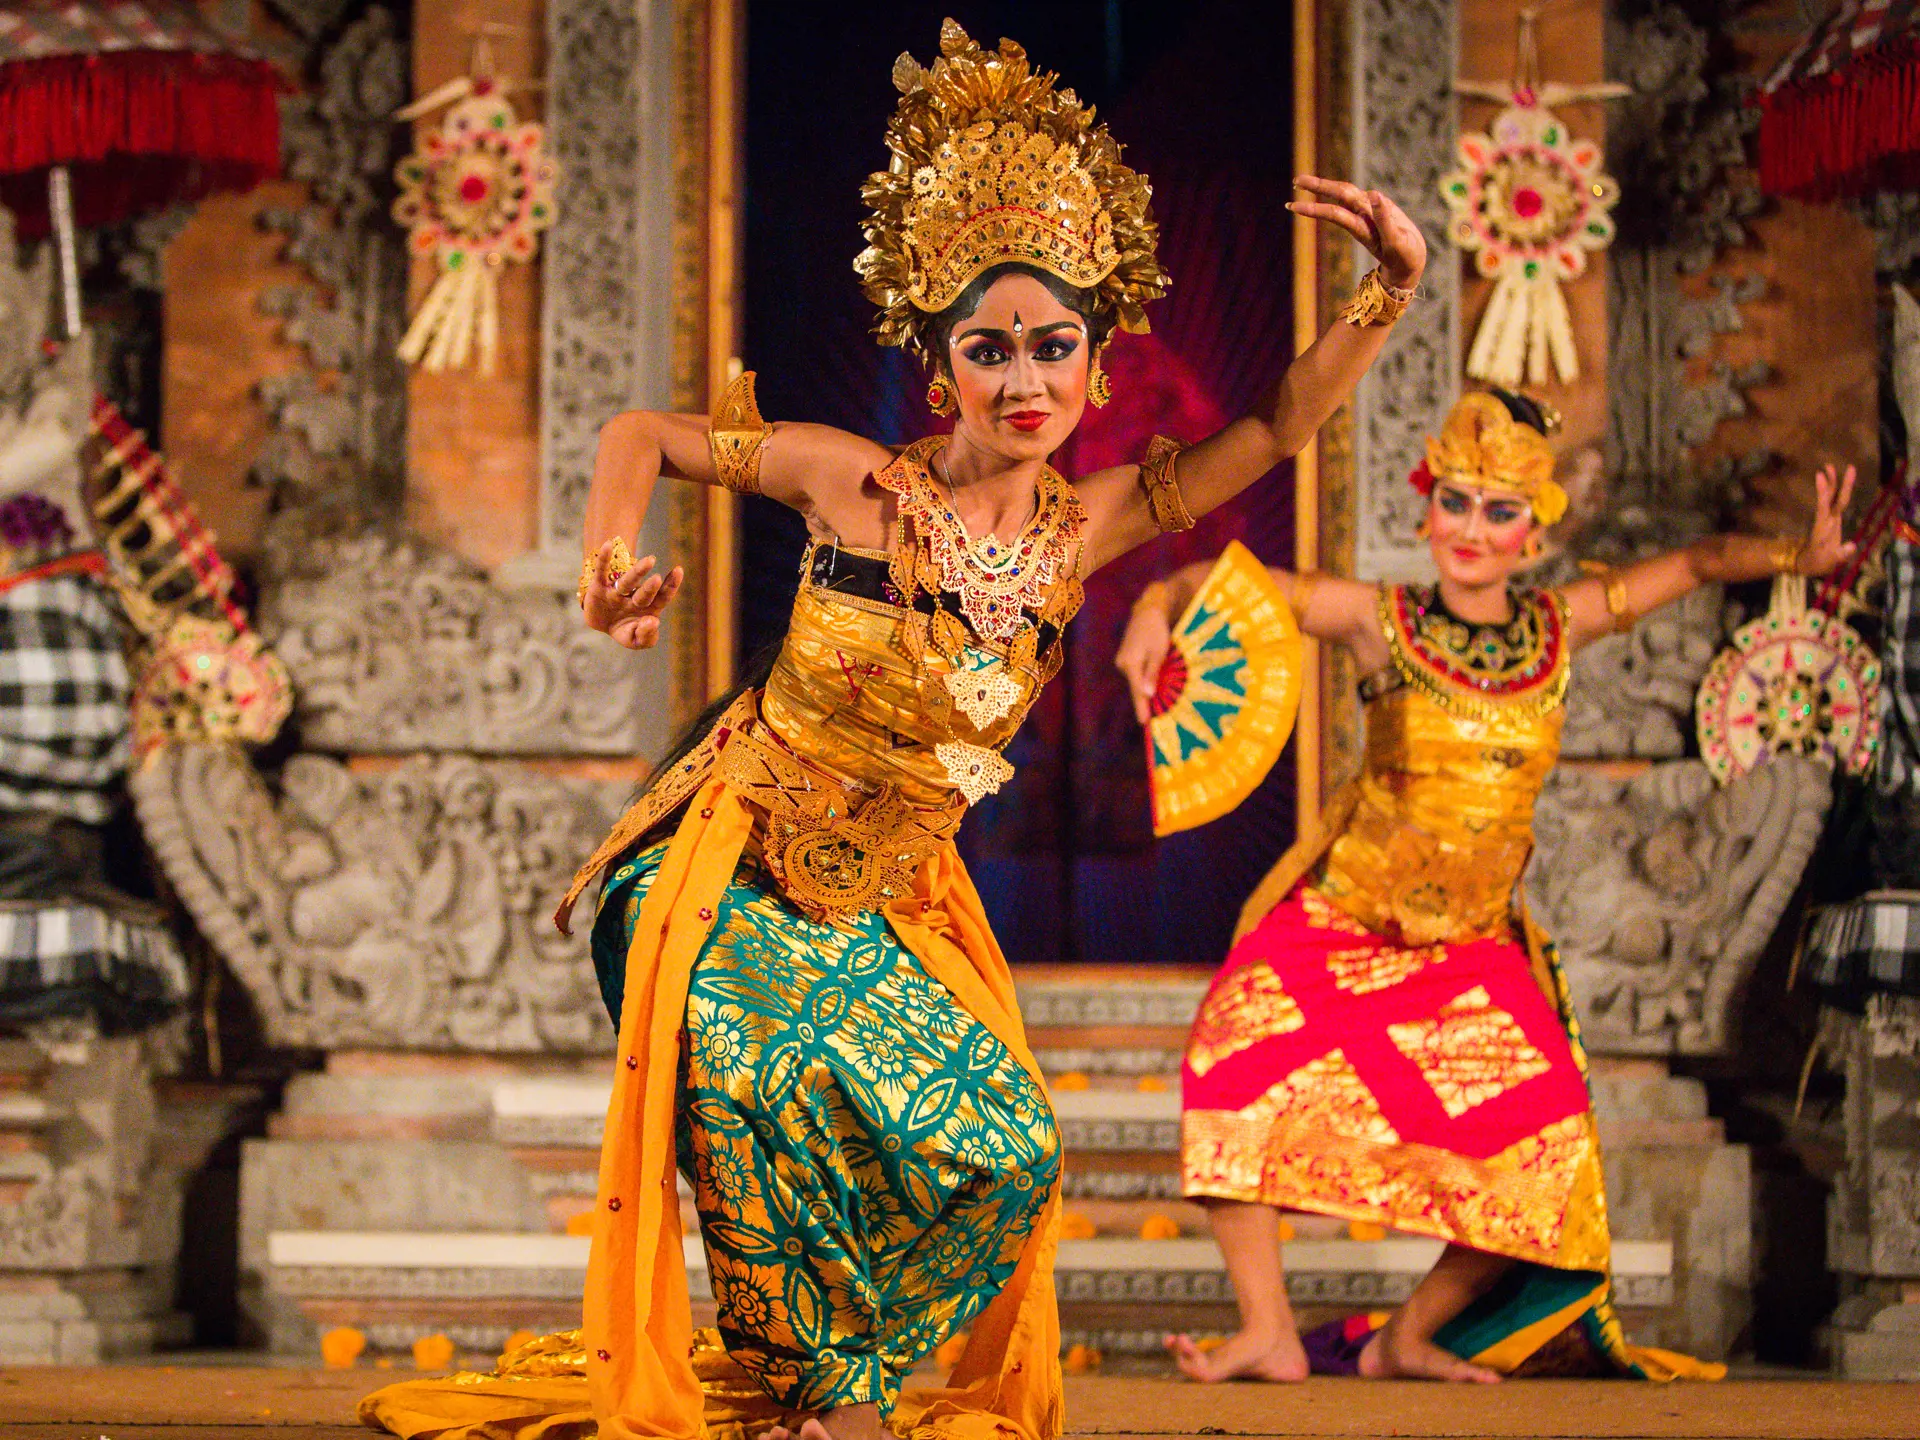 UBUD, BALI, INDONESIA - FEBRUARY, 23 Legong traditional Balinese dance in Ubud, Bali.jpg